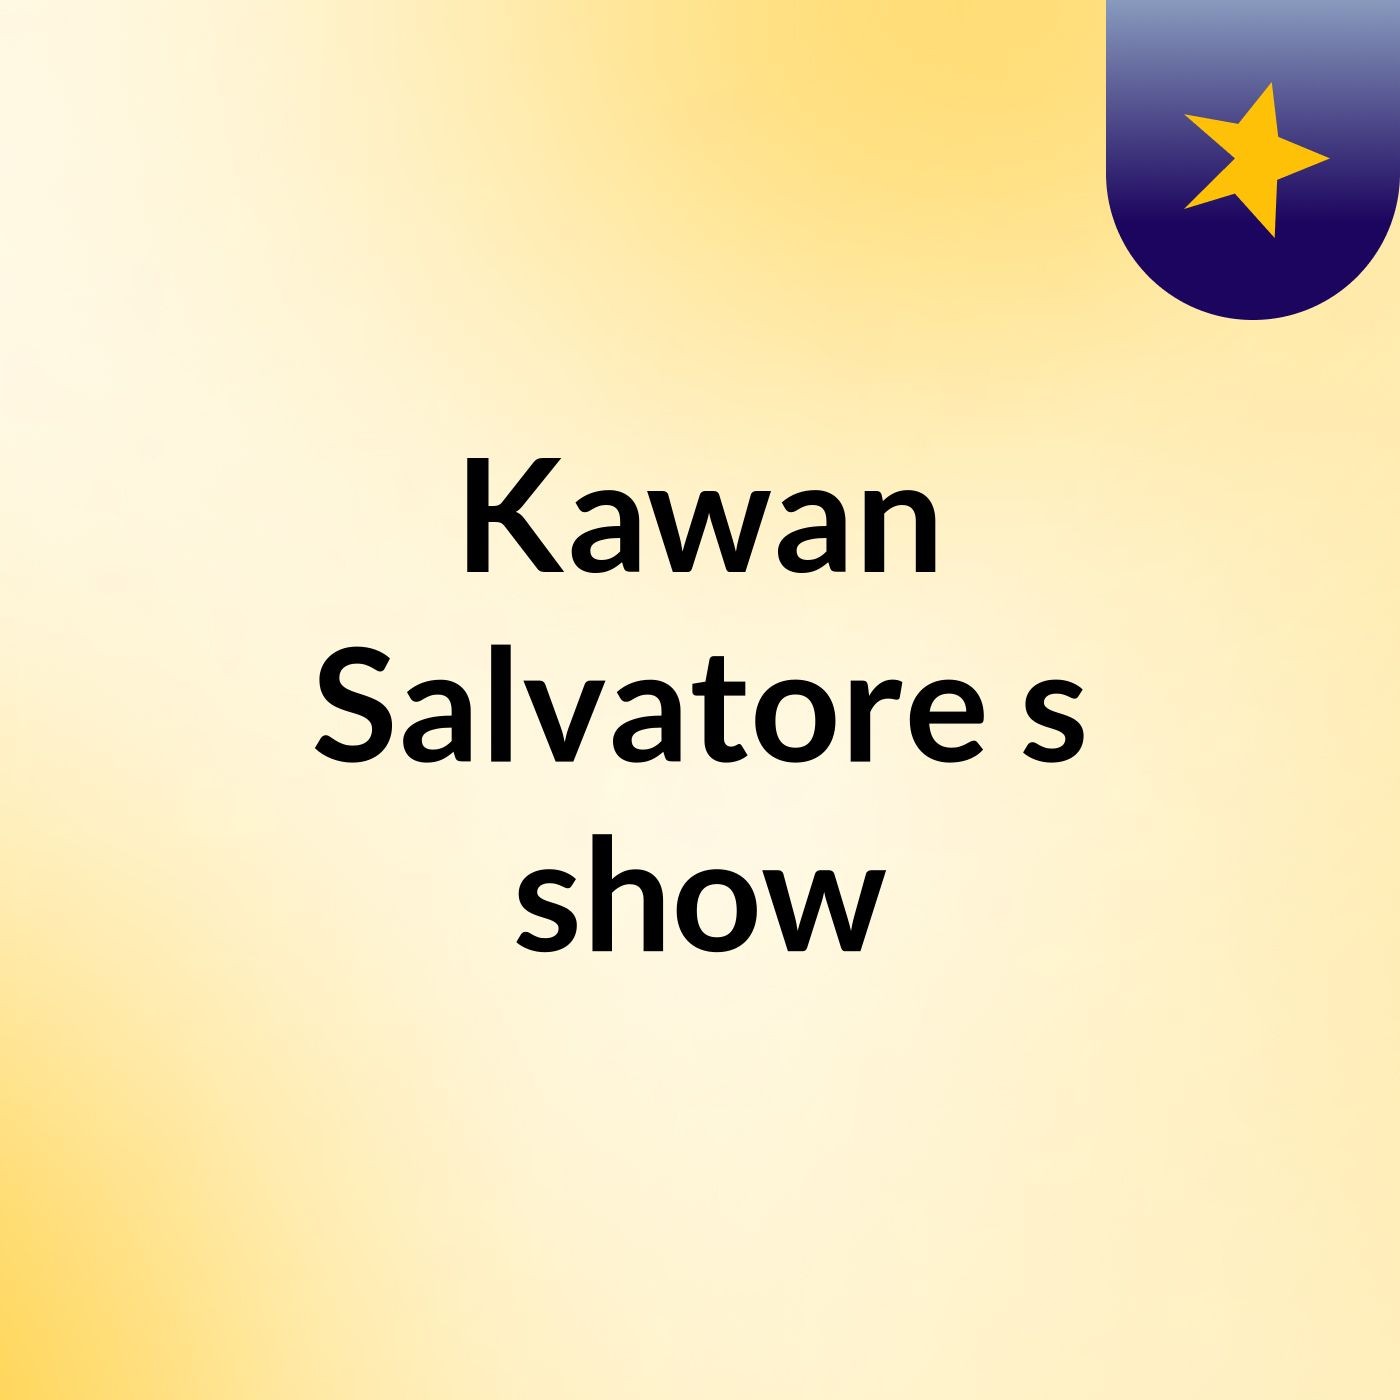 Kawan Salvatore's show